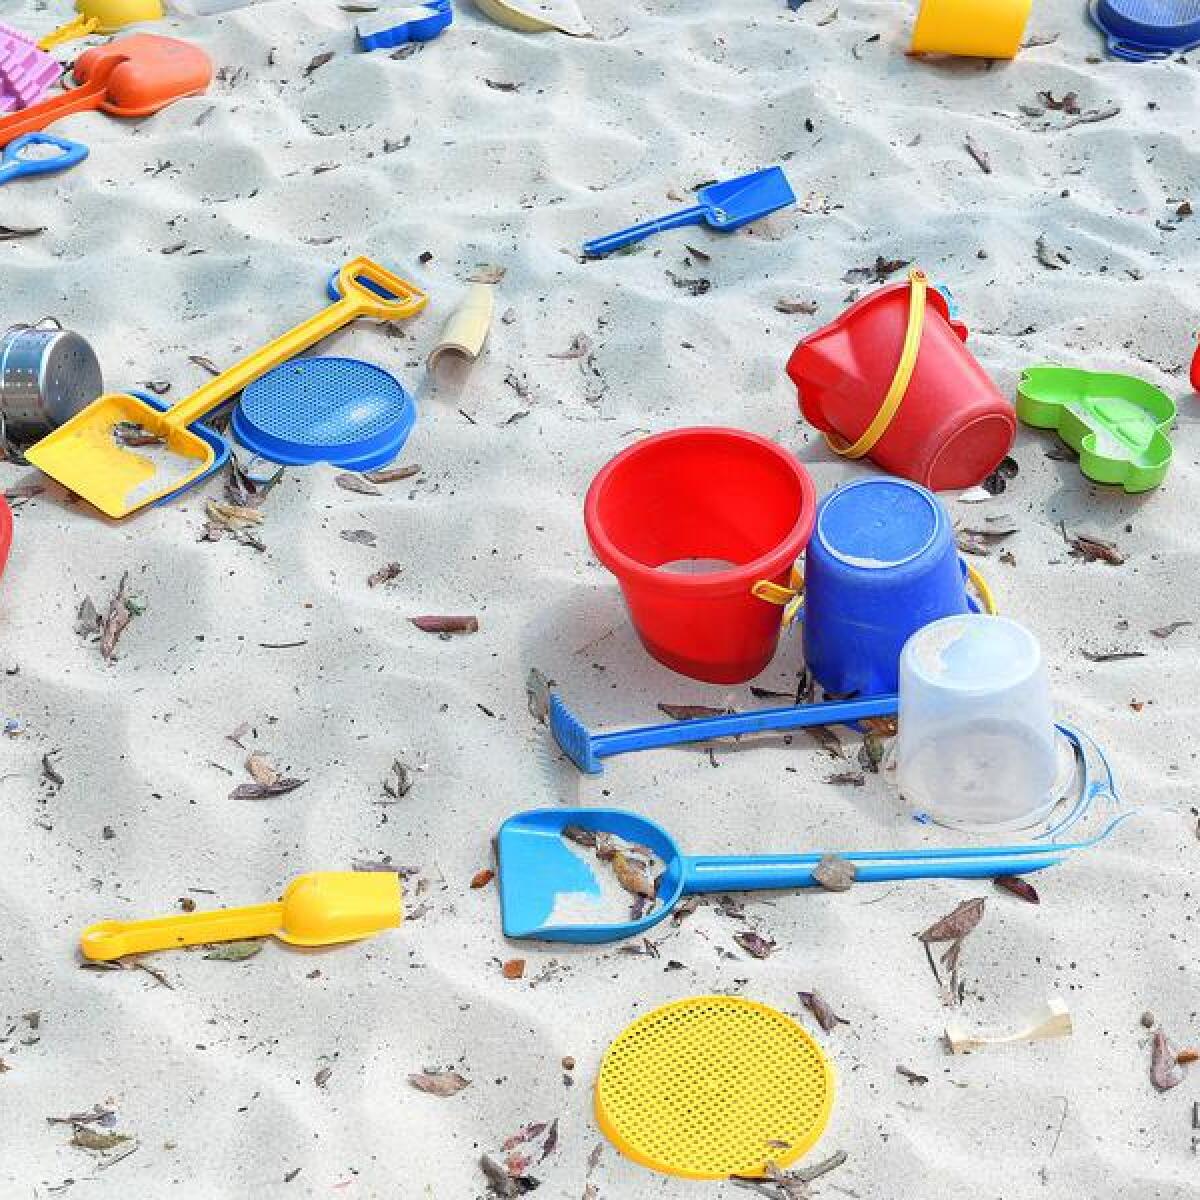 Children's sandpit (file image)